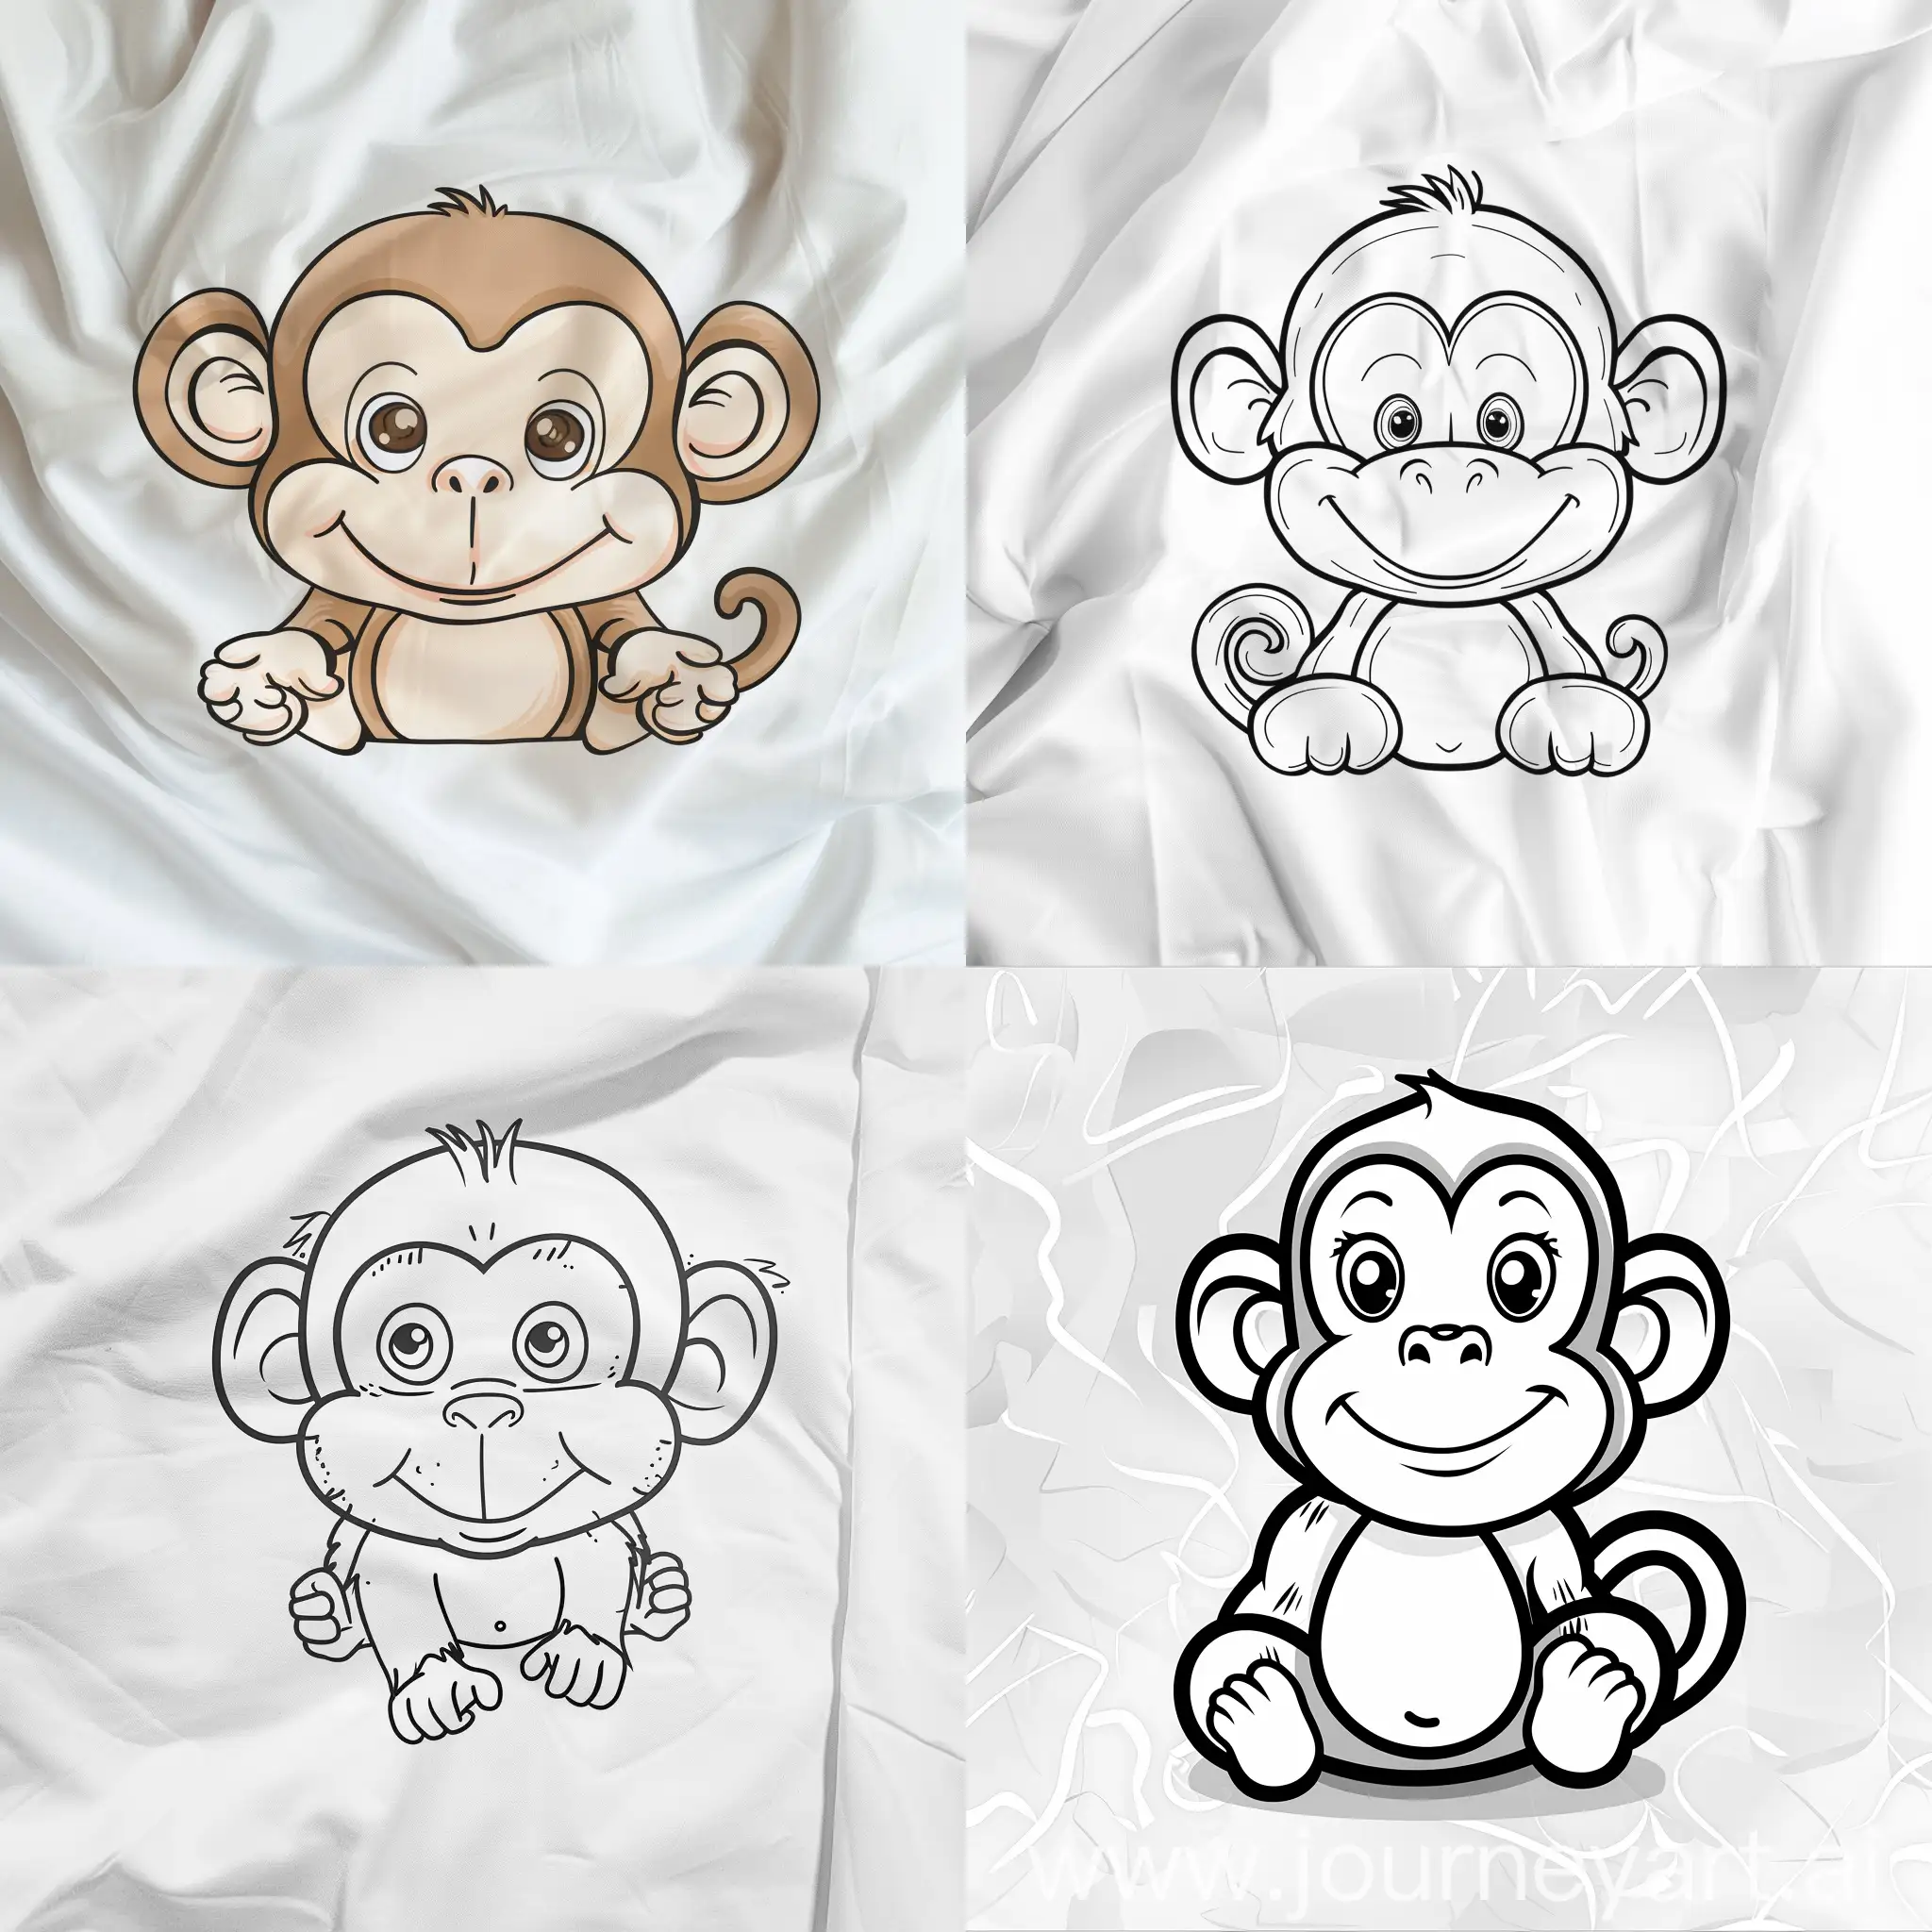 Dibuja un mono lindo y sencillo para libro de colorear de niños pequeños, sin escalas de grises en una hoja blanca con fondo liso sin dibujos